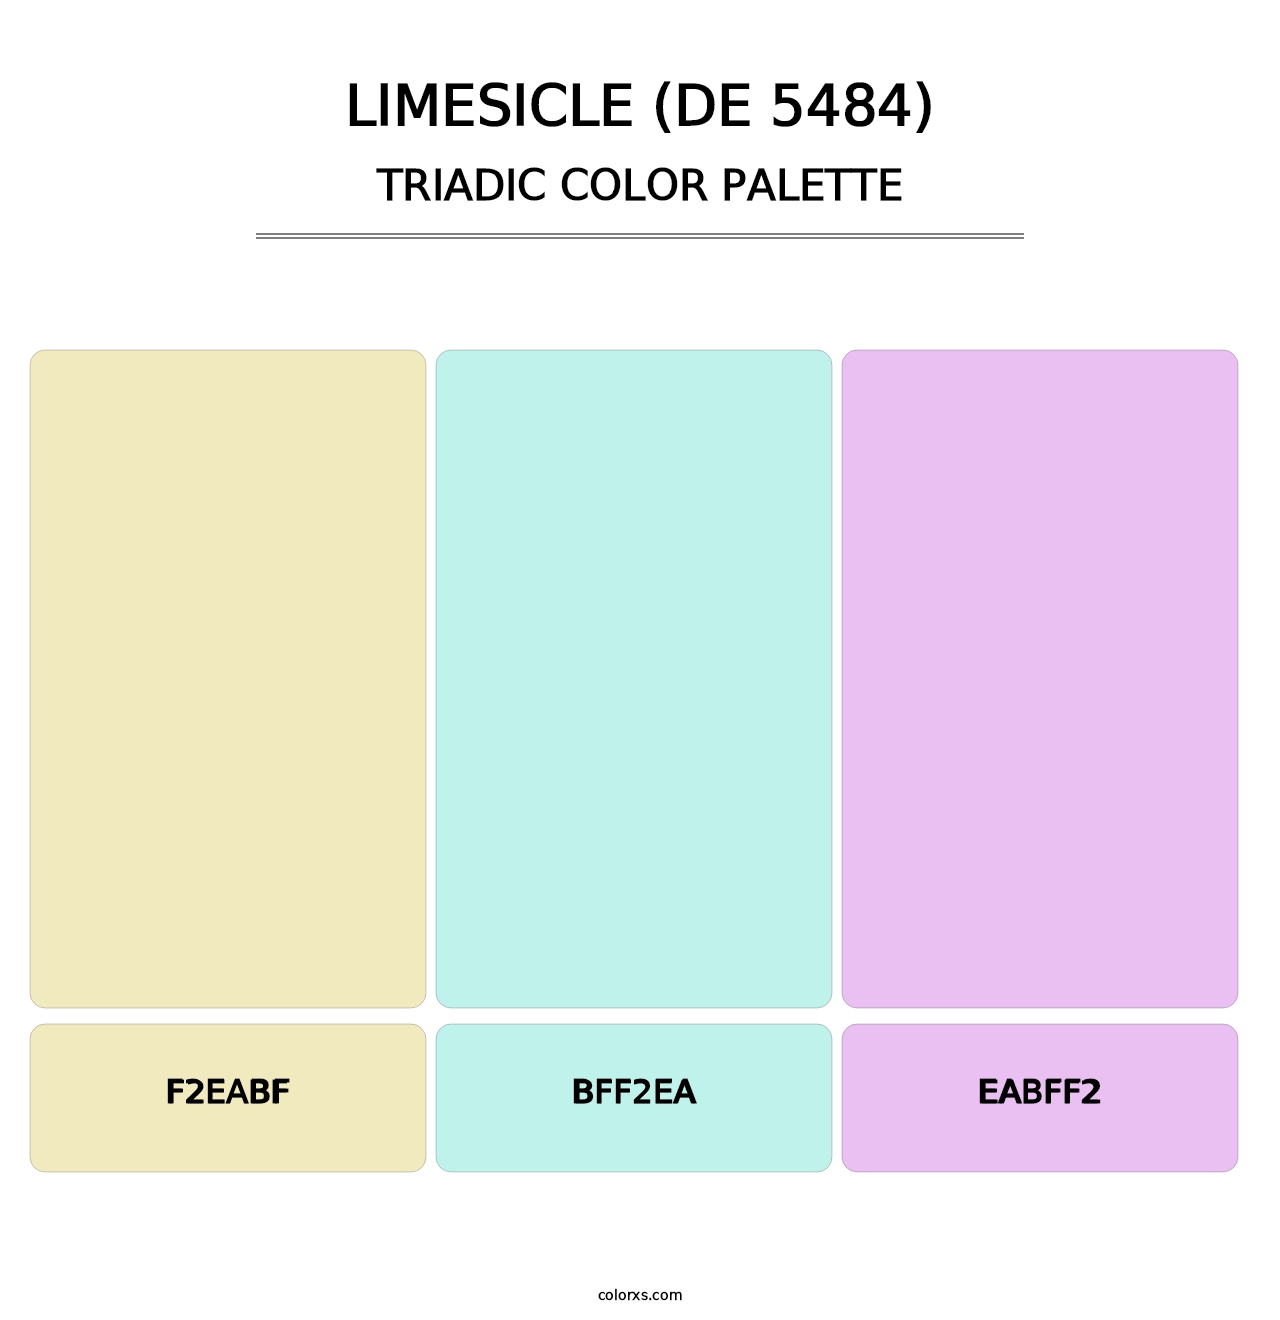 Limesicle (DE 5484) - Triadic Color Palette